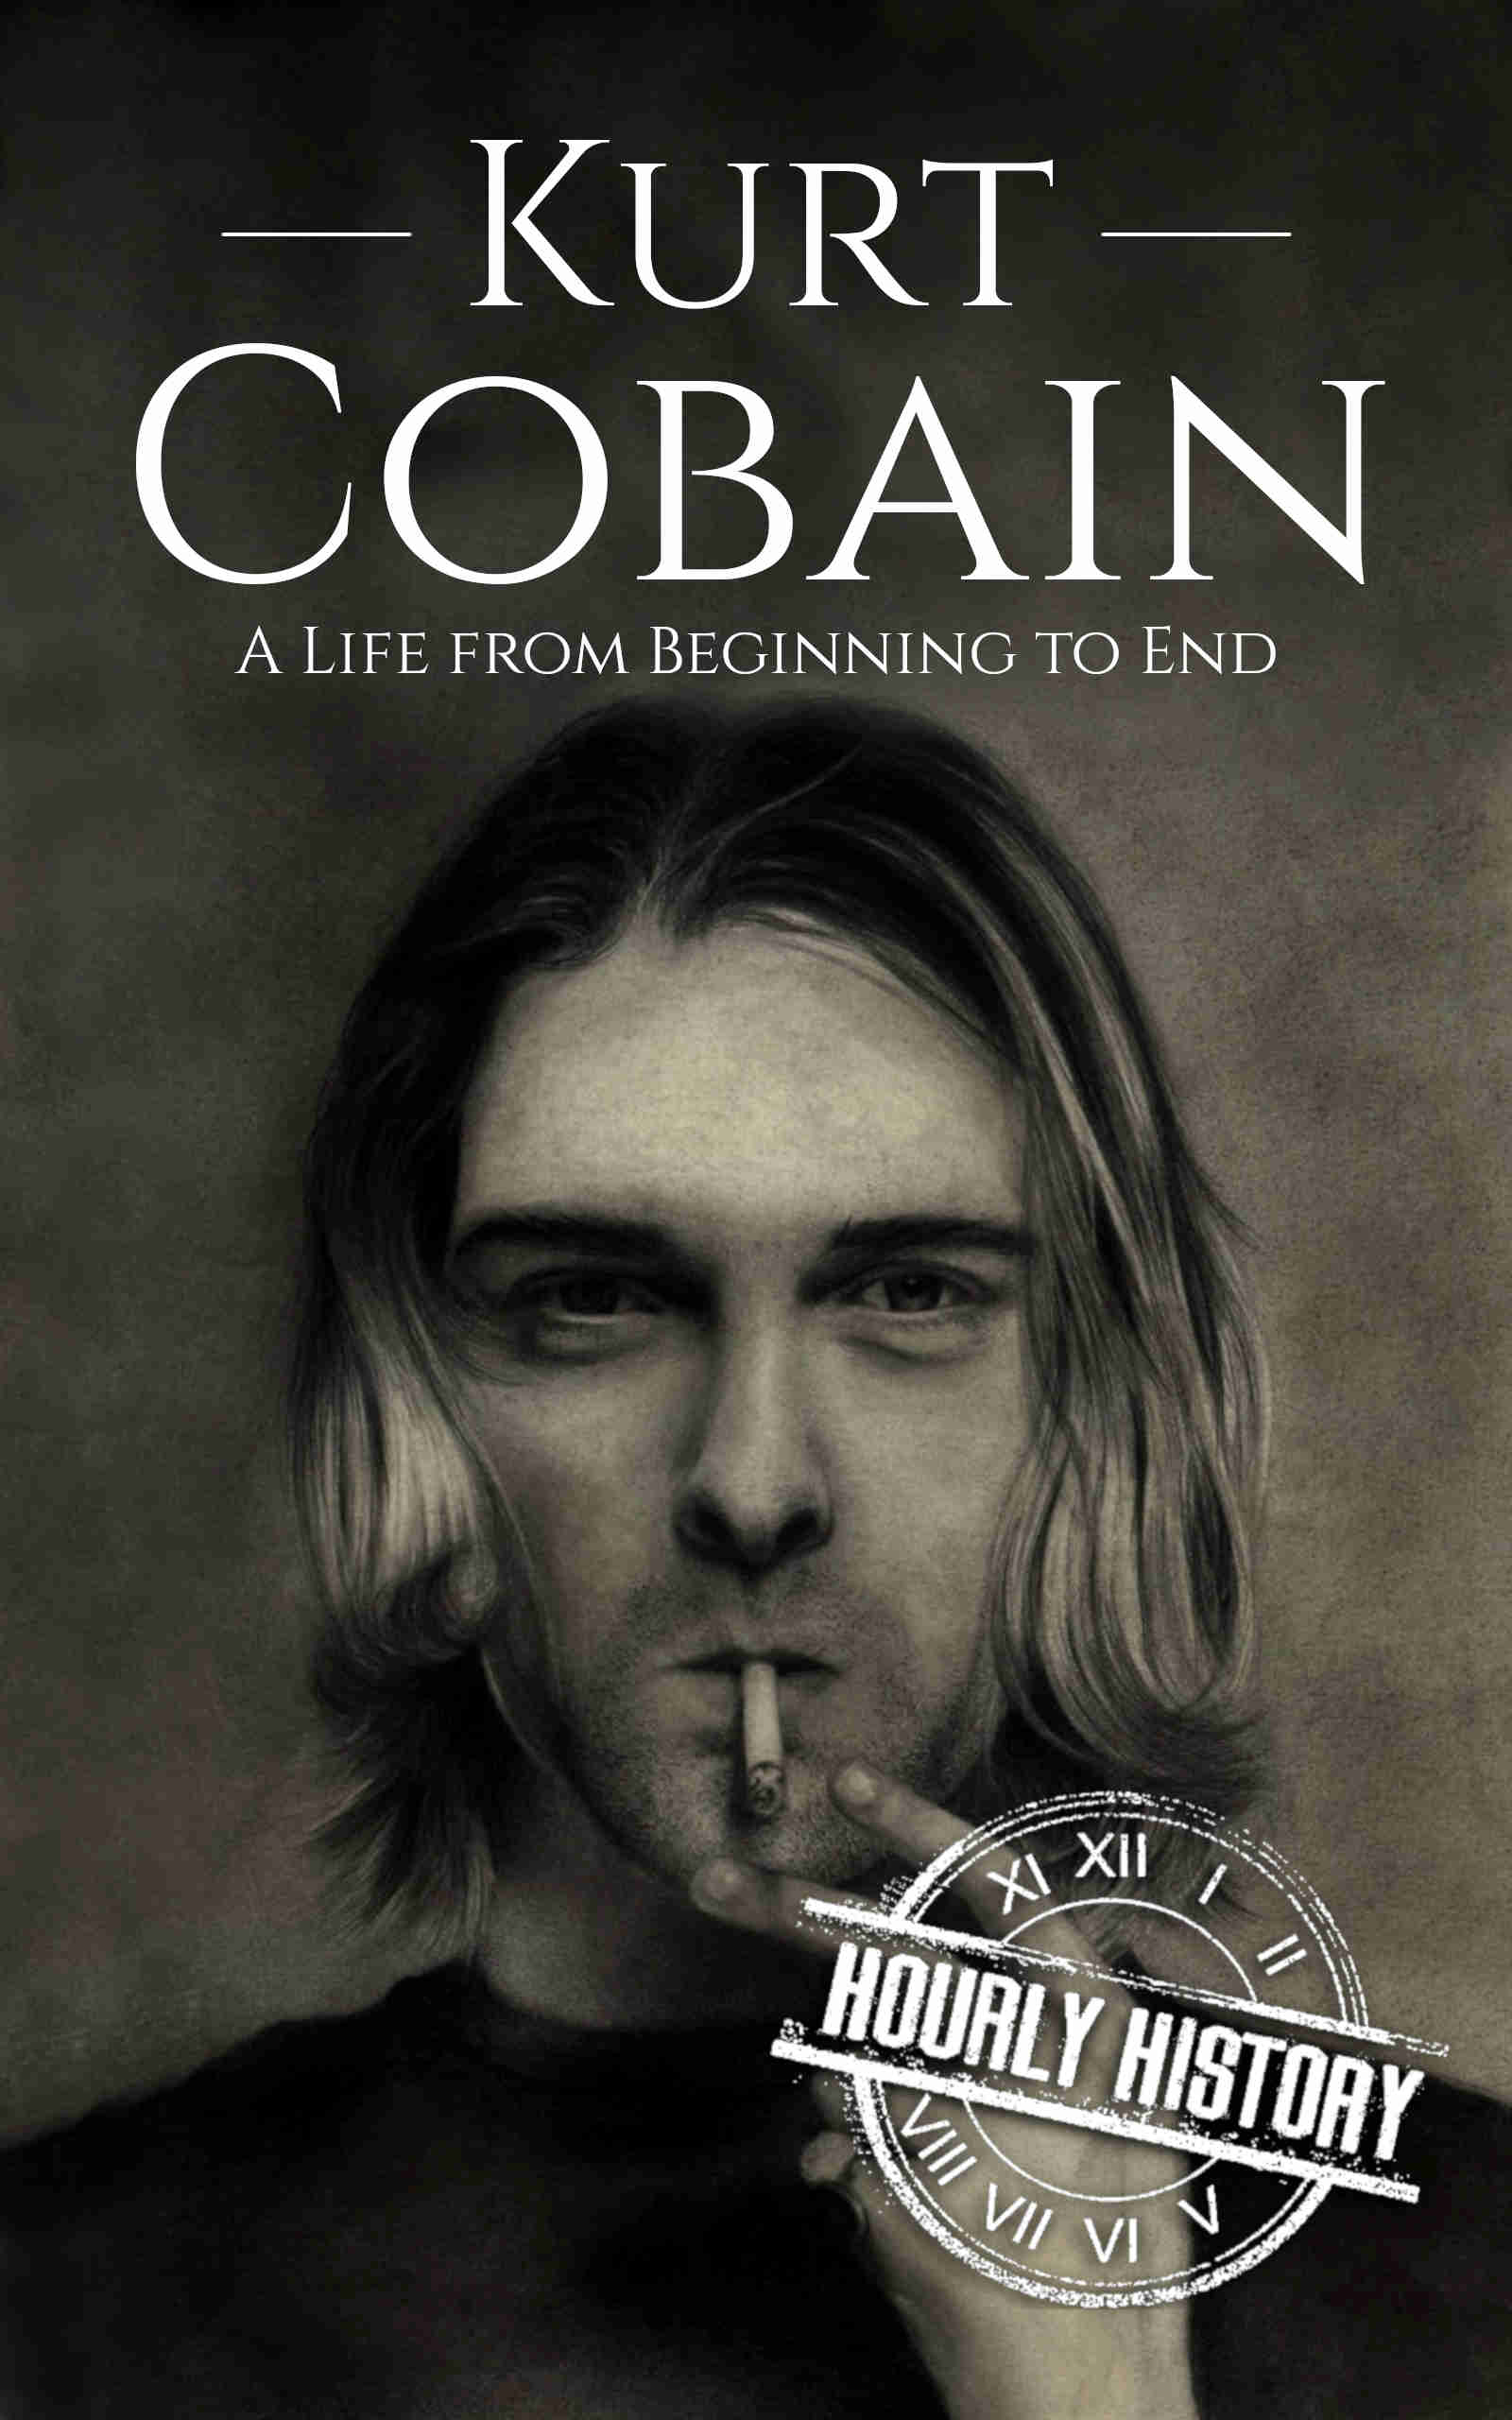 biography about kurt cobain